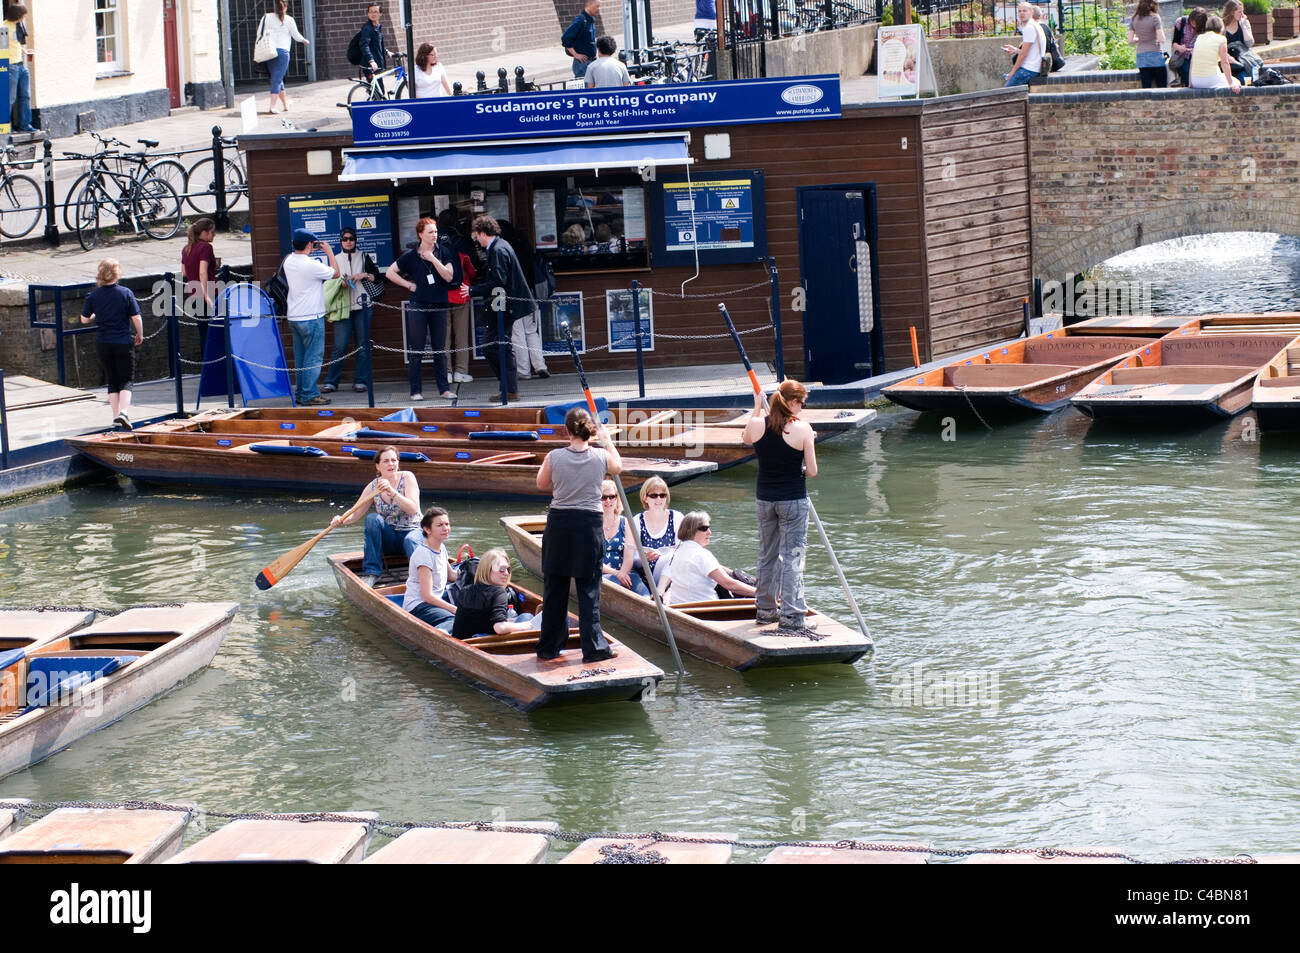 Punt sterline punting Cambridge in barca Gita in barca gite turistiche tradizionali attività di turisti studente i processi di lavoro gli studenti occupazione Foto Stock